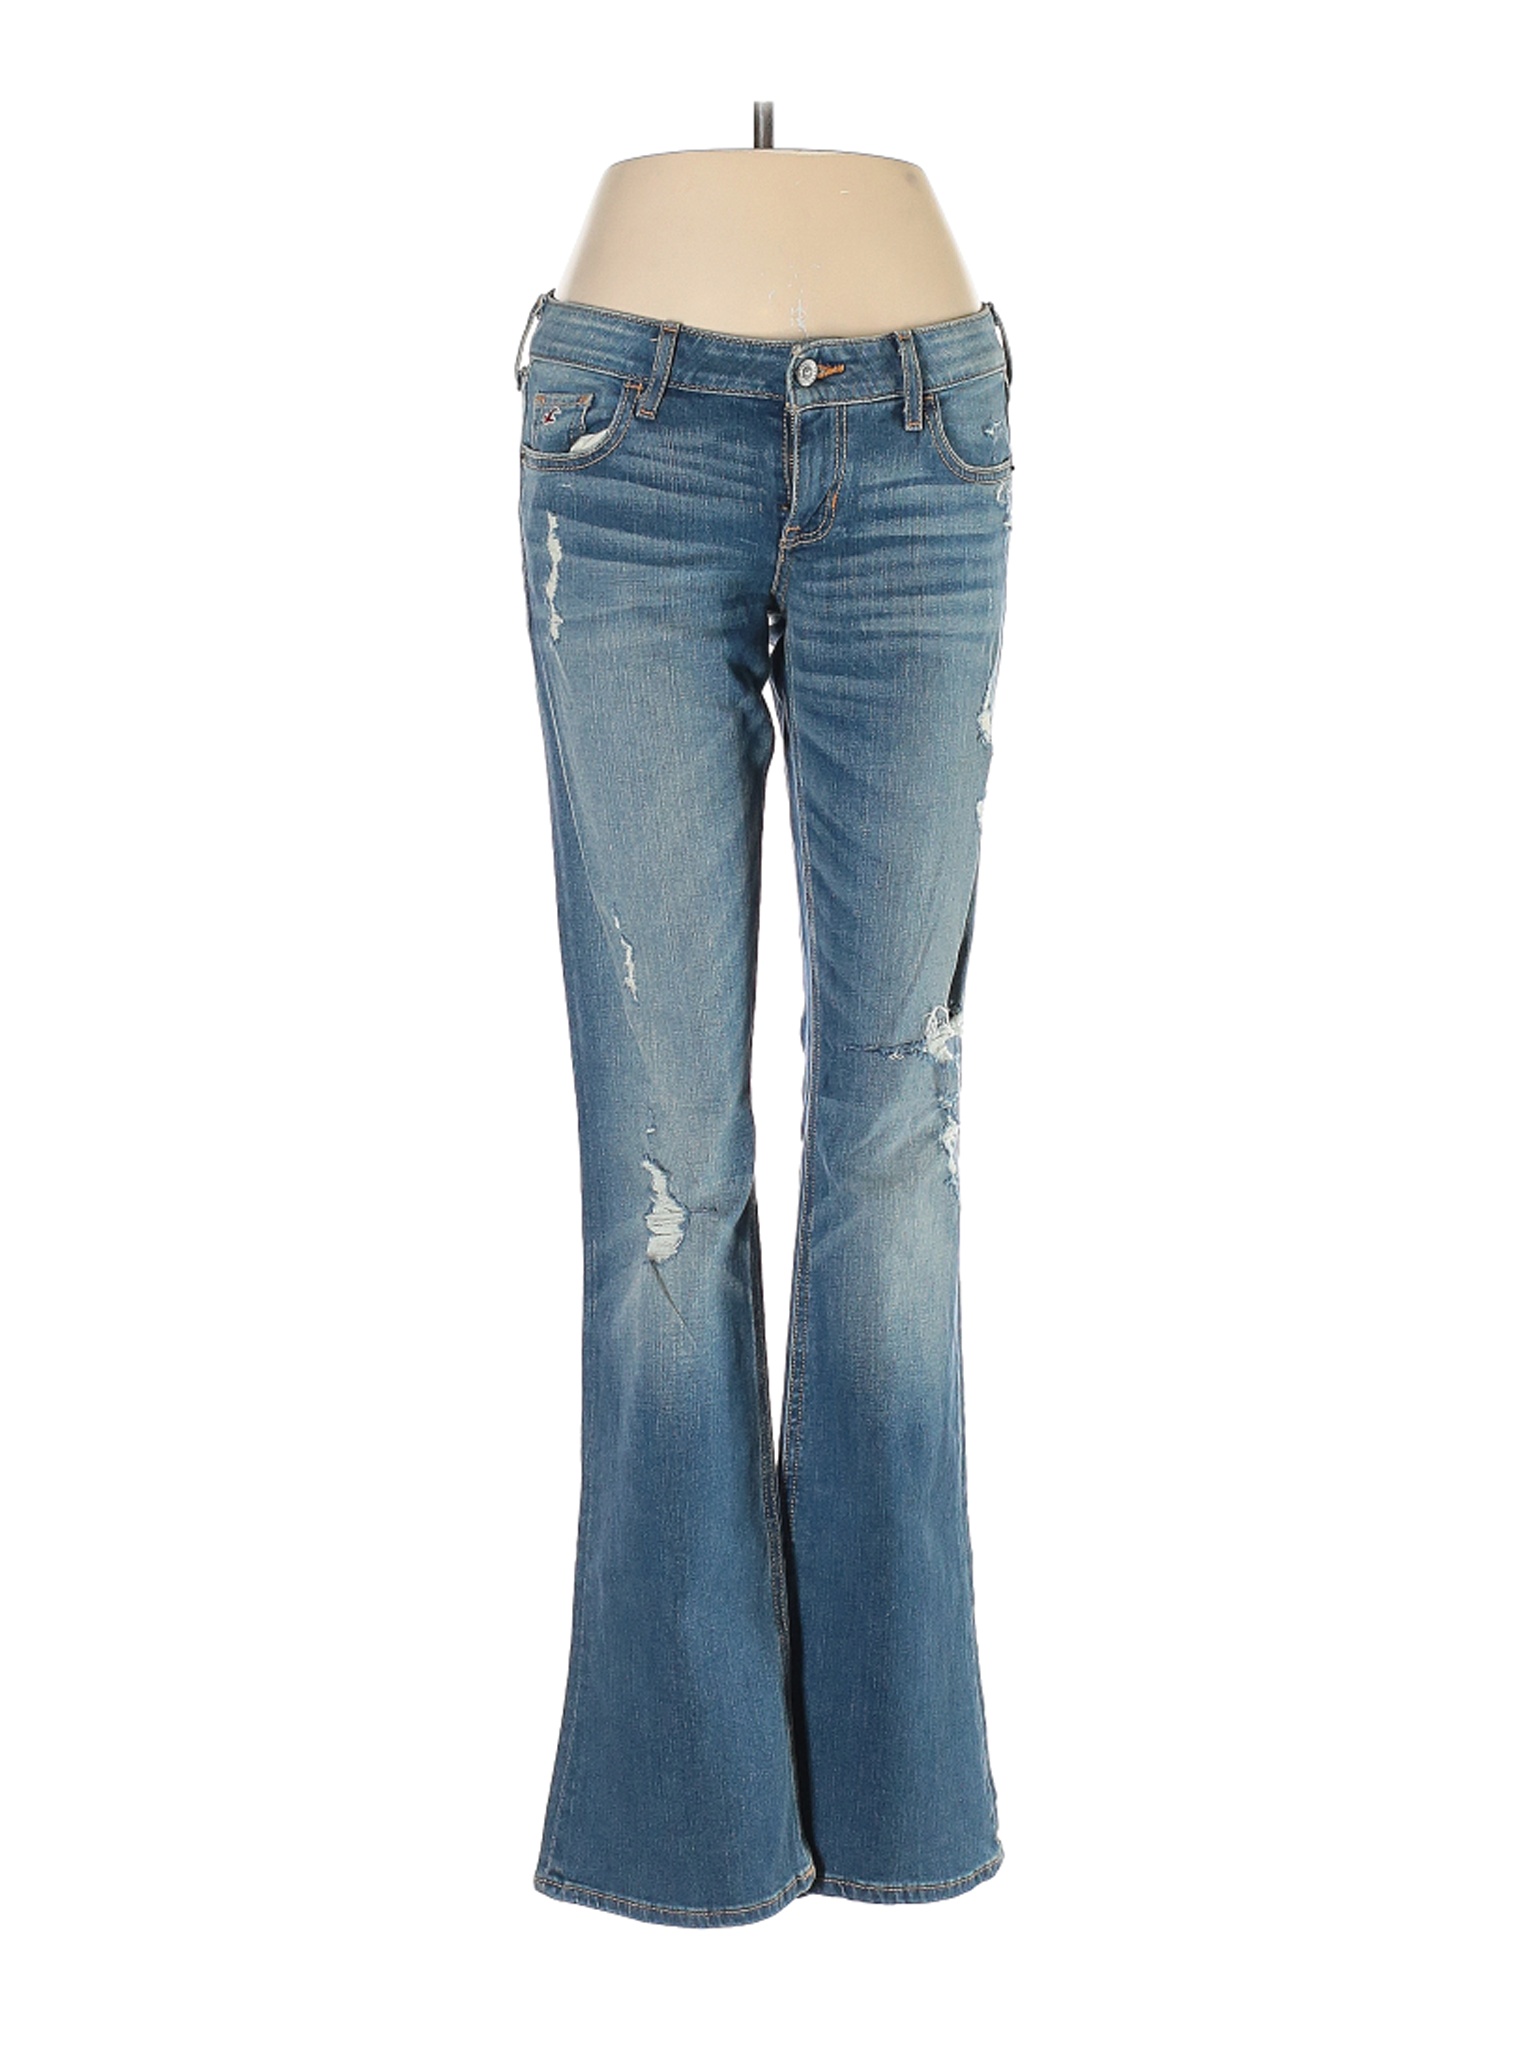 Hollister Women Blue Jeans 5 | eBay